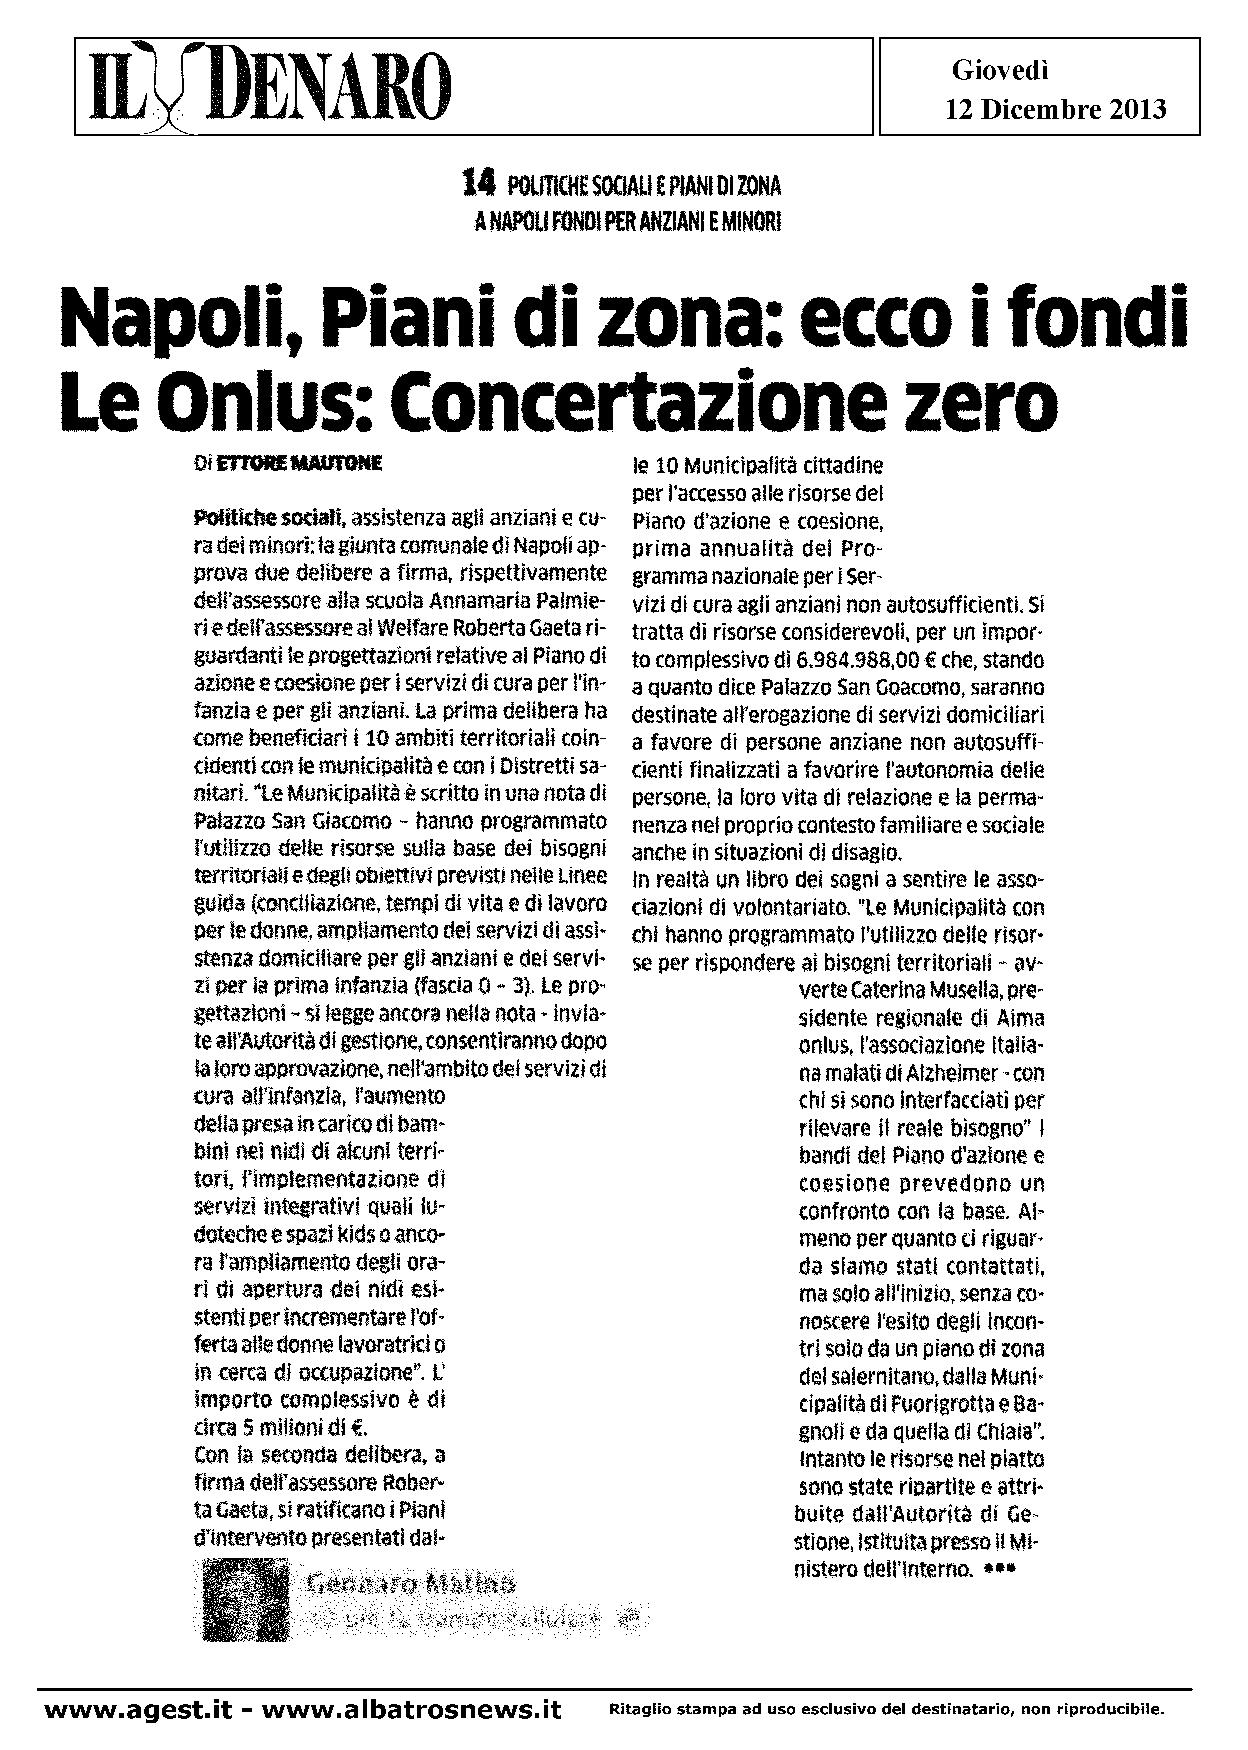 NAPOLI, PIANI DI ZONA, ECCO I FONDI, LE ONLUS CONCERTAZIONE ZERO-page-001